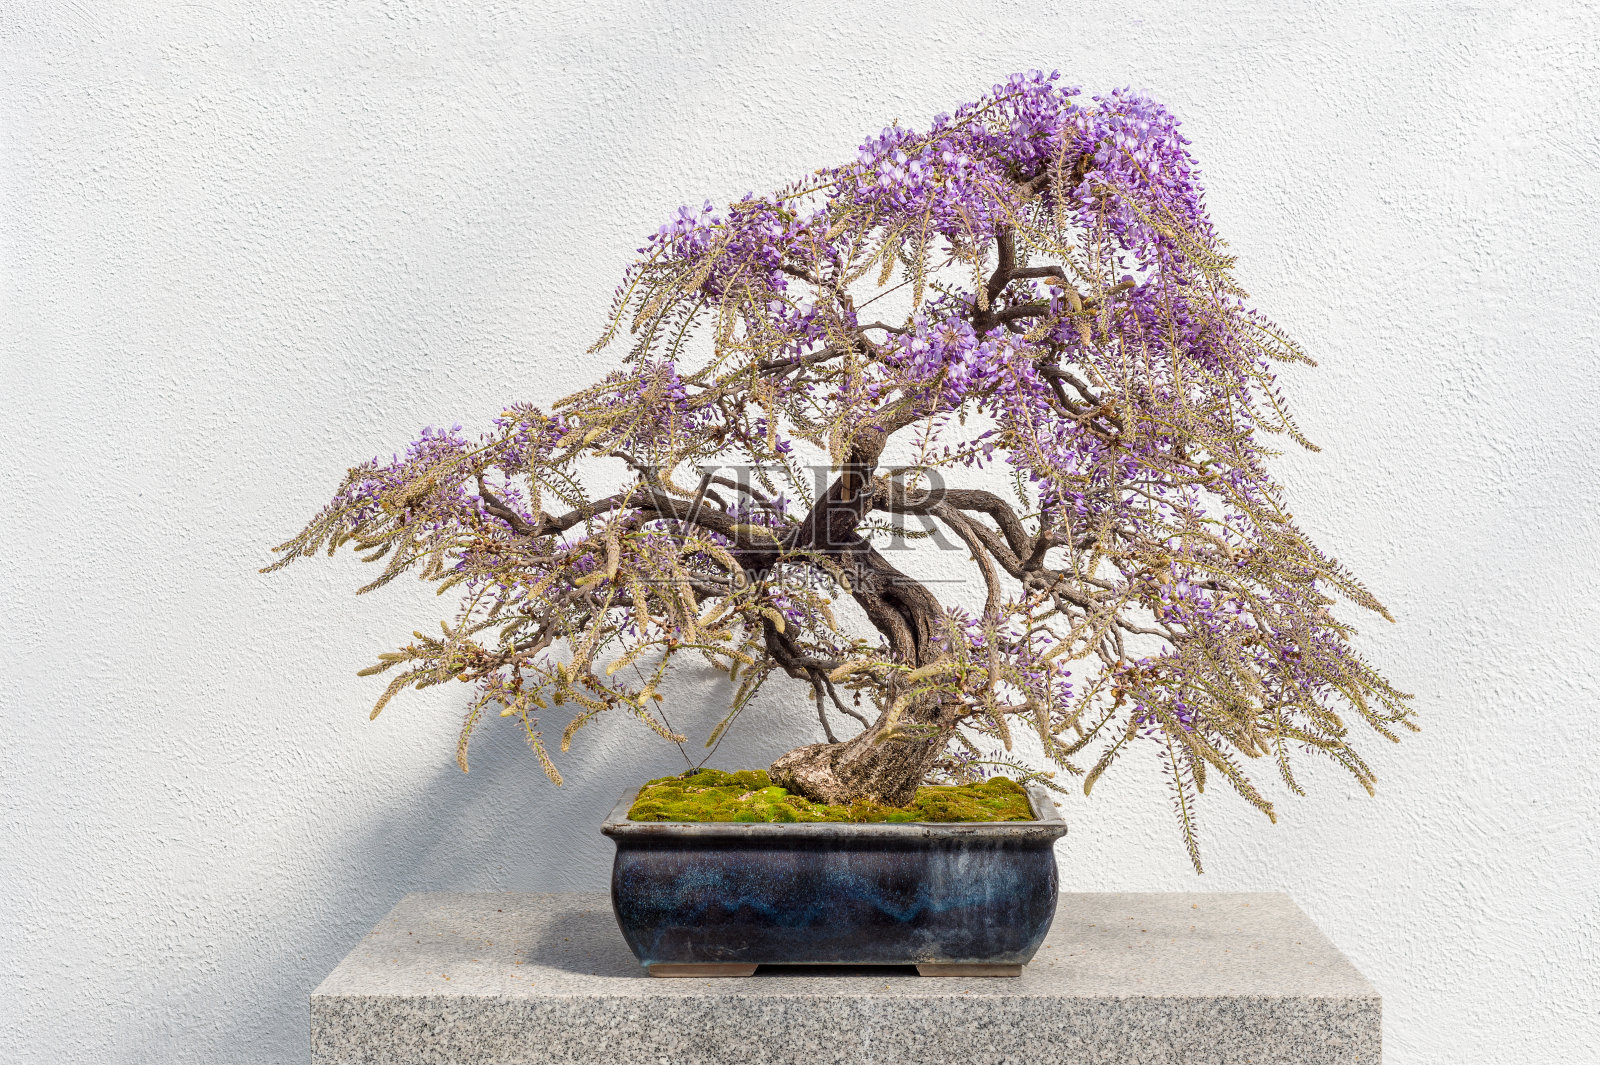 盛开的日本紫藤盆景照片摄影图片